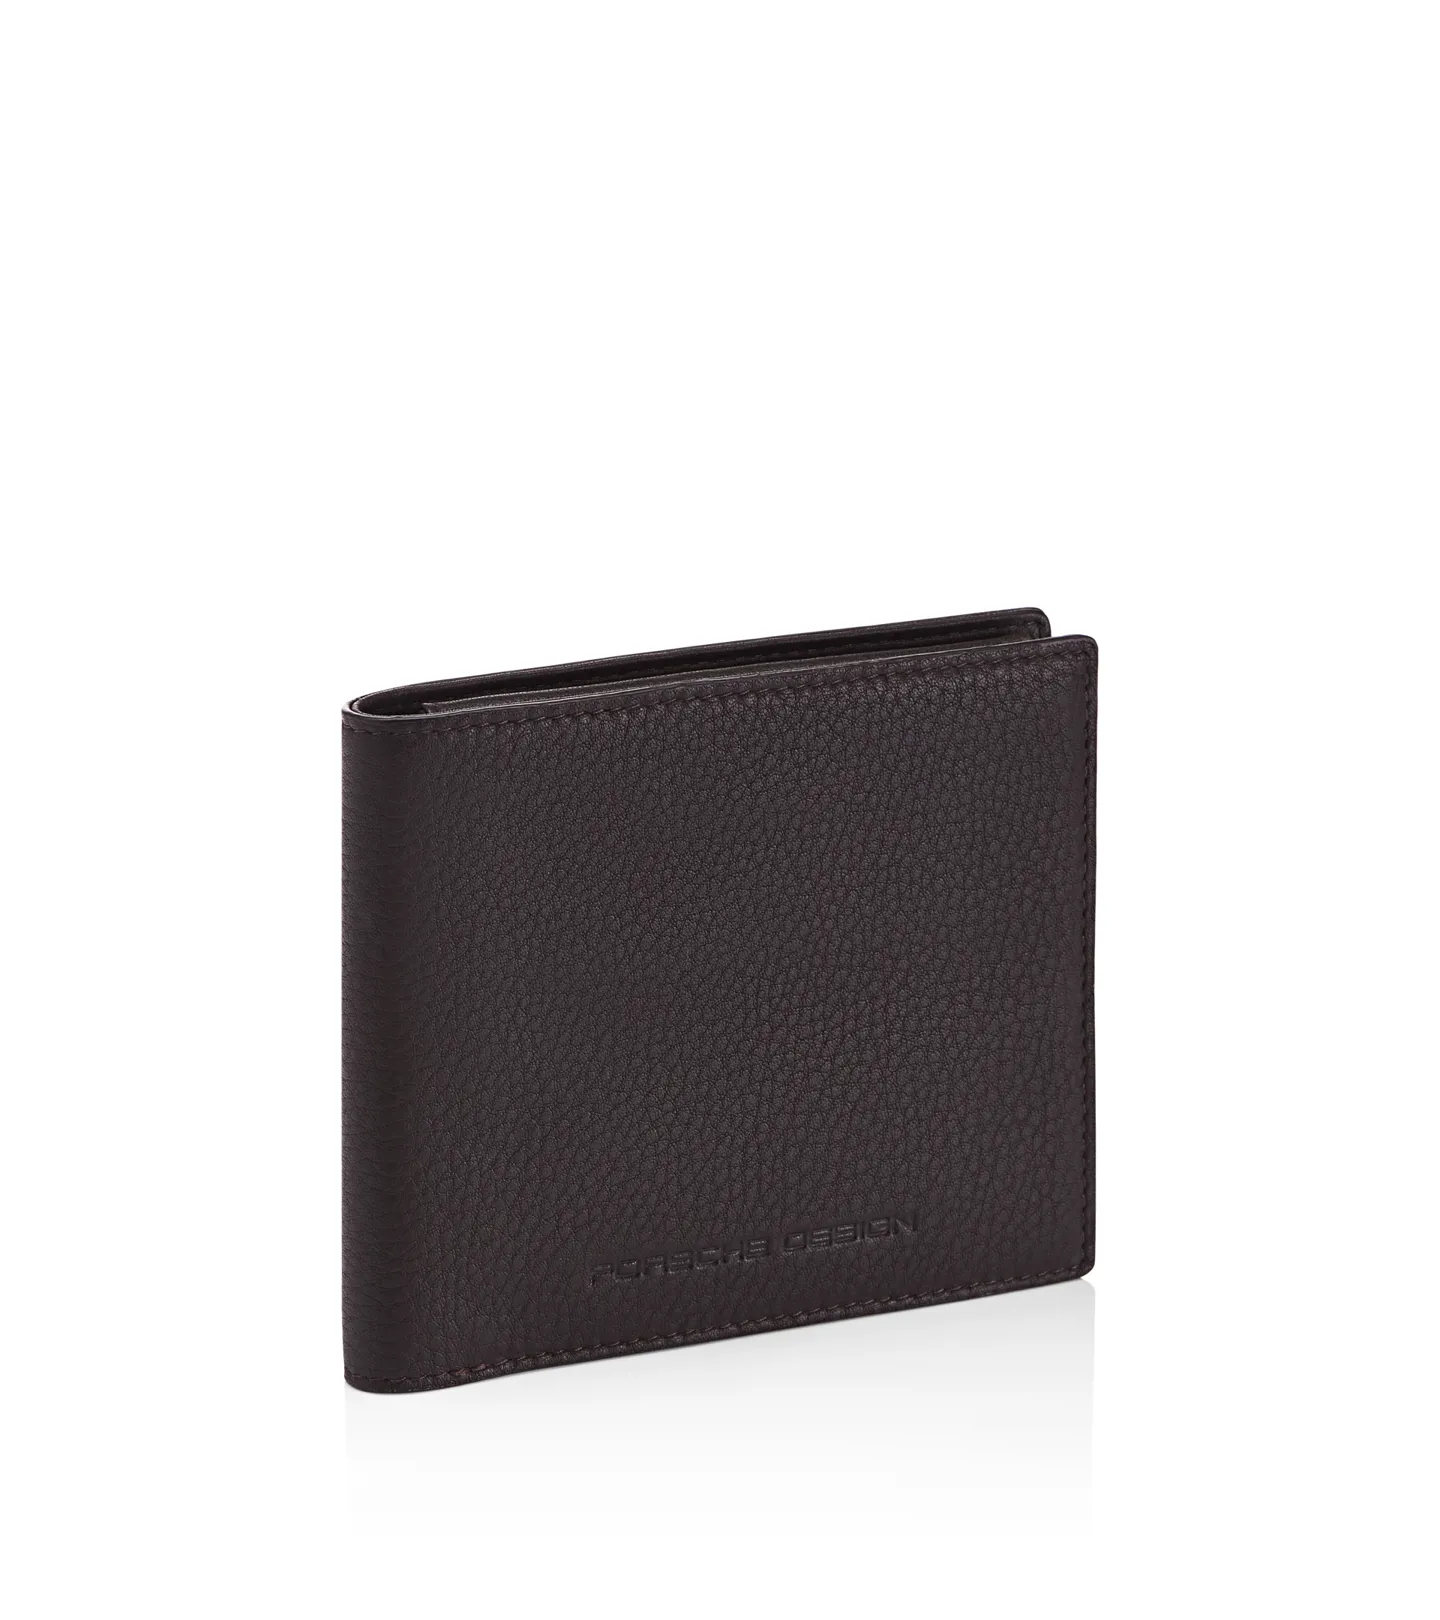 Porsche Design Business Wallet 4 - dark brown